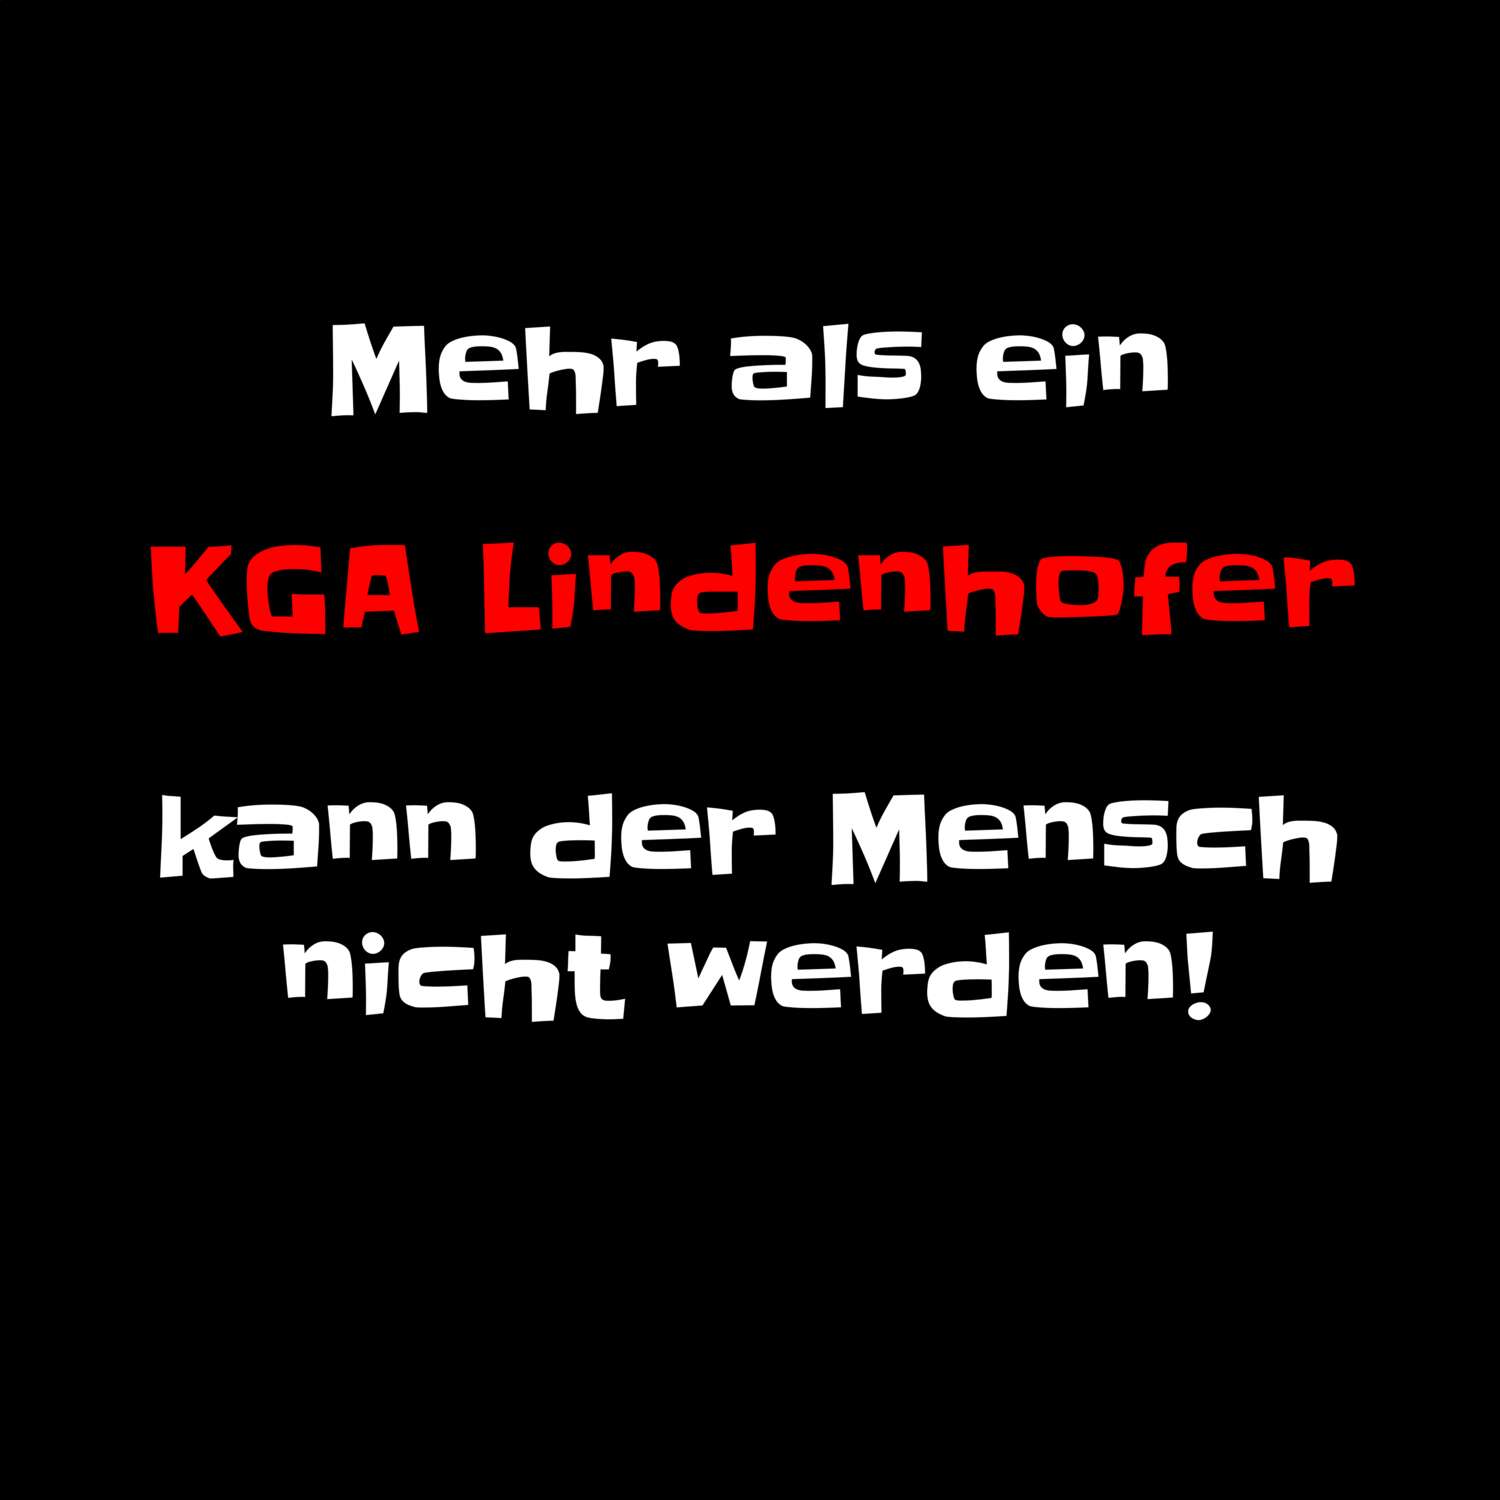 KGA Lindenhof T-Shirt »Mehr als ein«